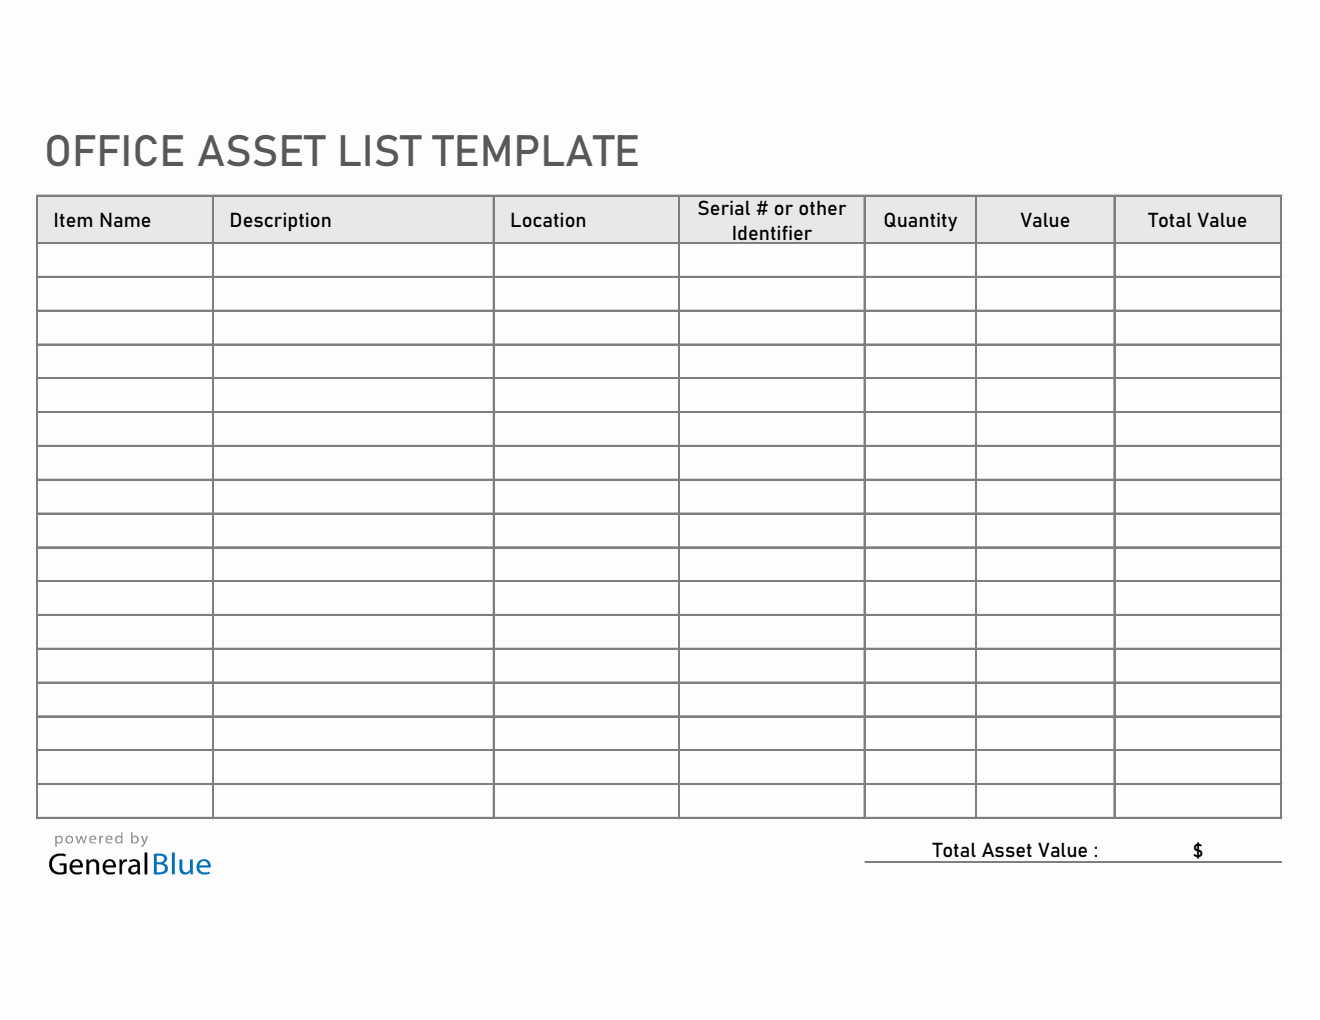 Excel Office Asset List Template